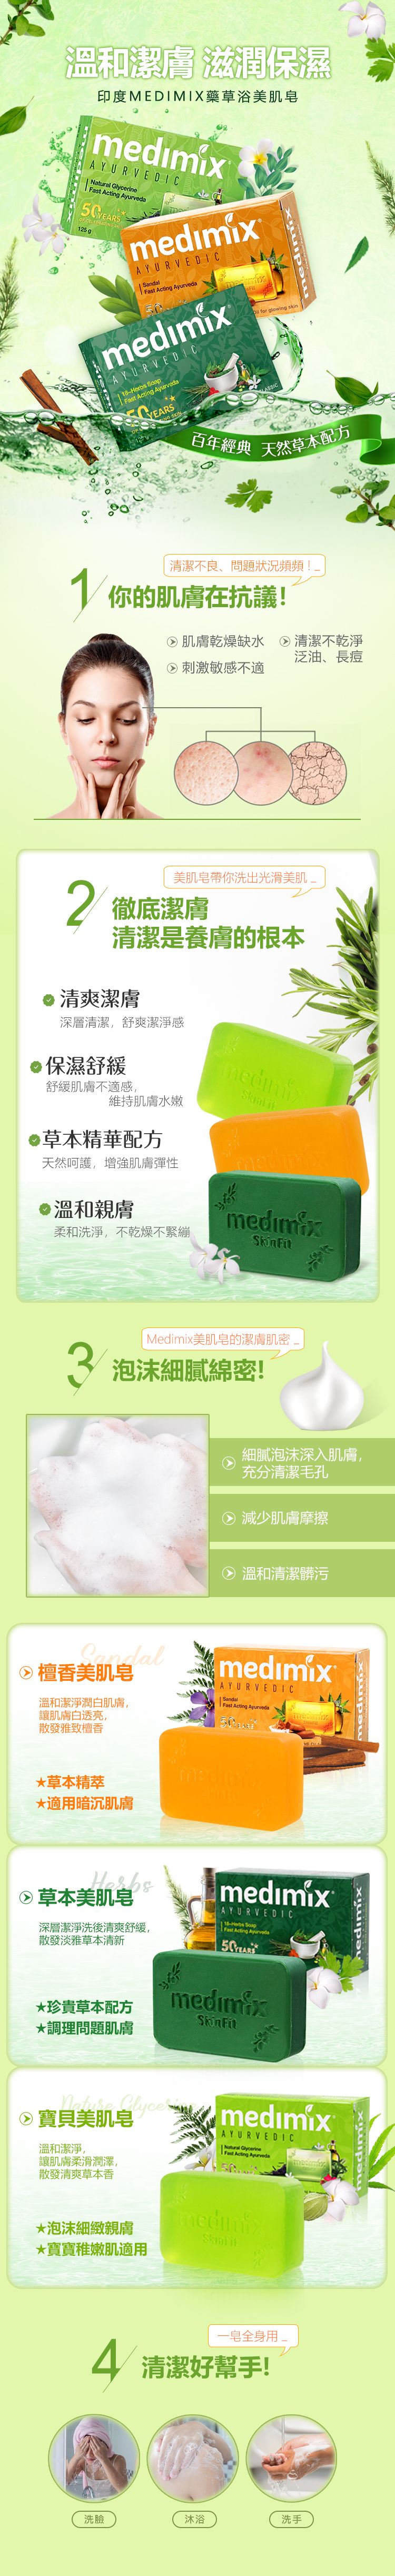 印度 肥皂 medimix 肥皂 印度 肥皂 medimix